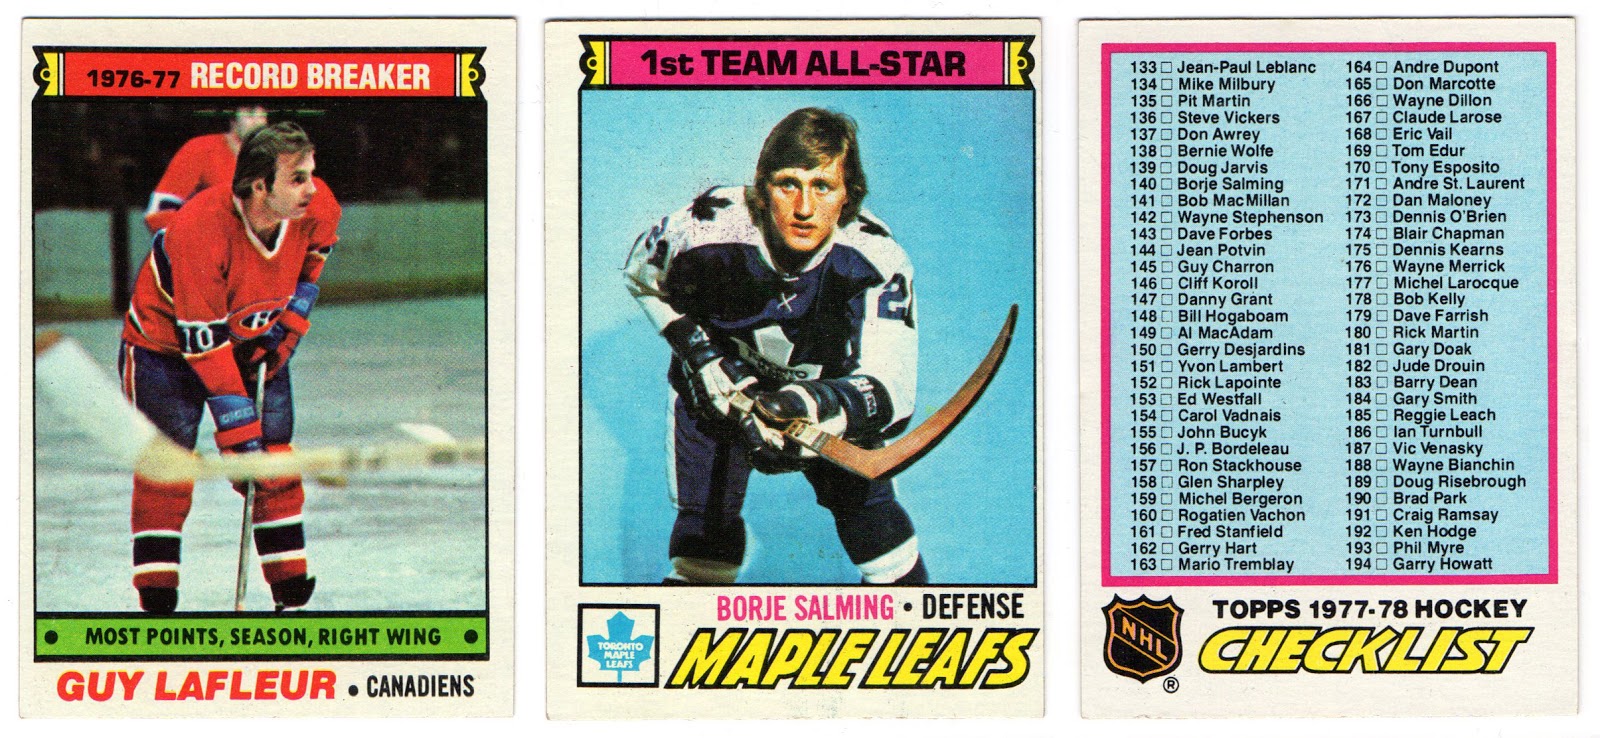 1971 Topps Regular (Hockey) Card# 60 Gilbert Perreault of the